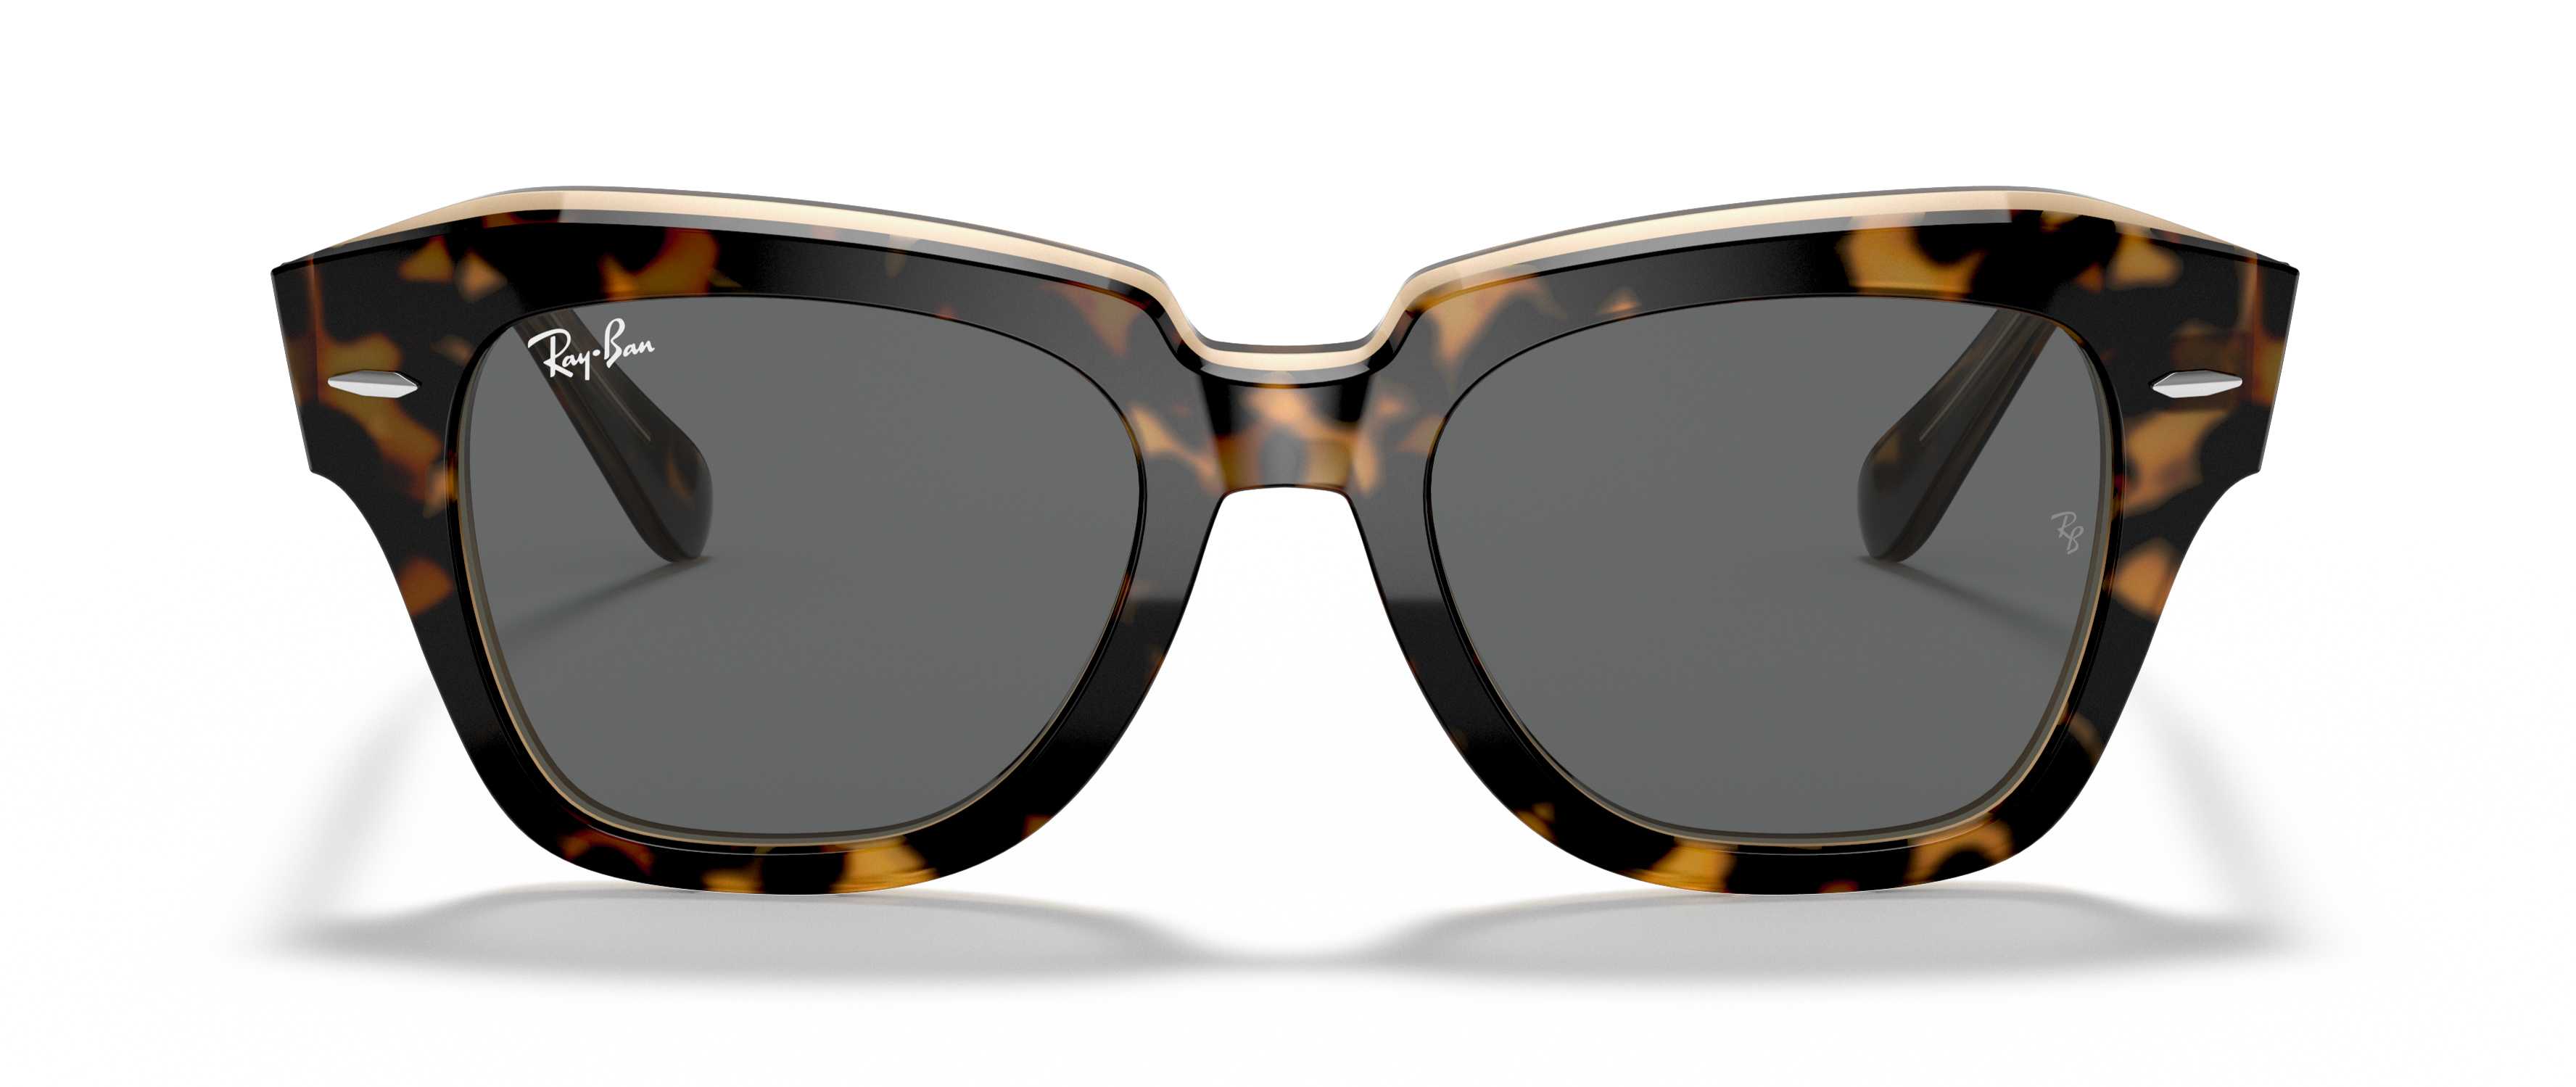 Thick, square, tortoiseshell sunglasses. 